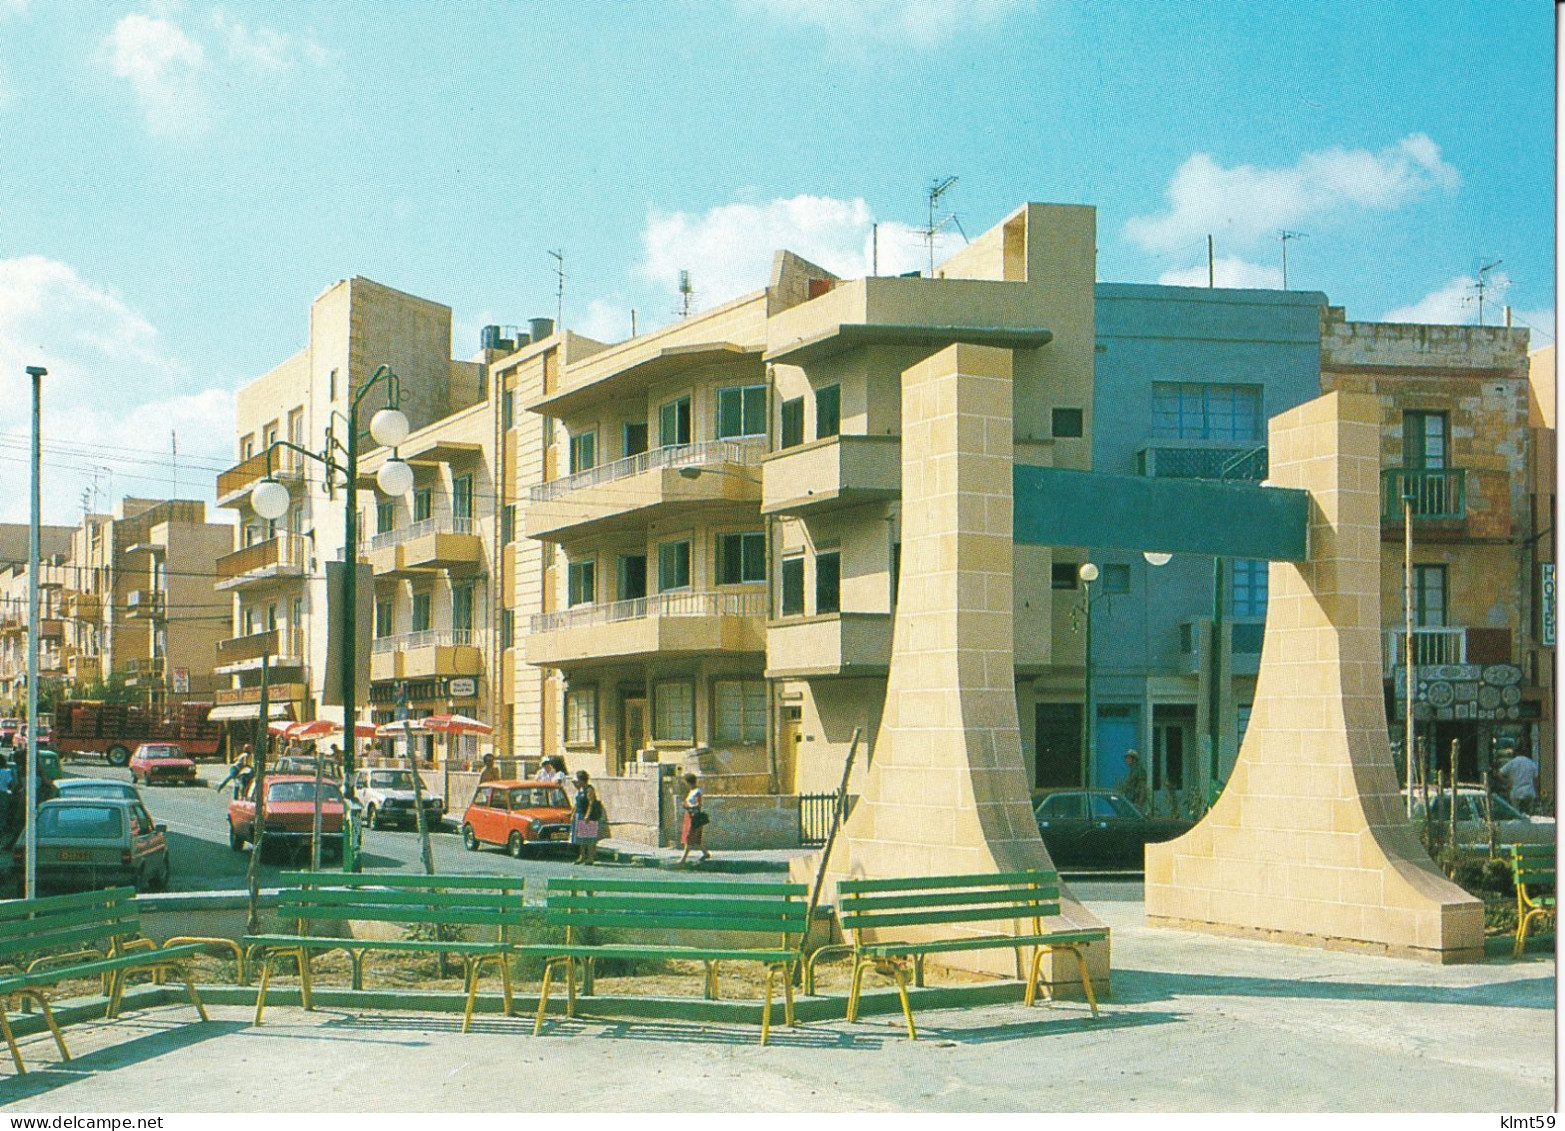 Buġibba - Bay Square - Malta